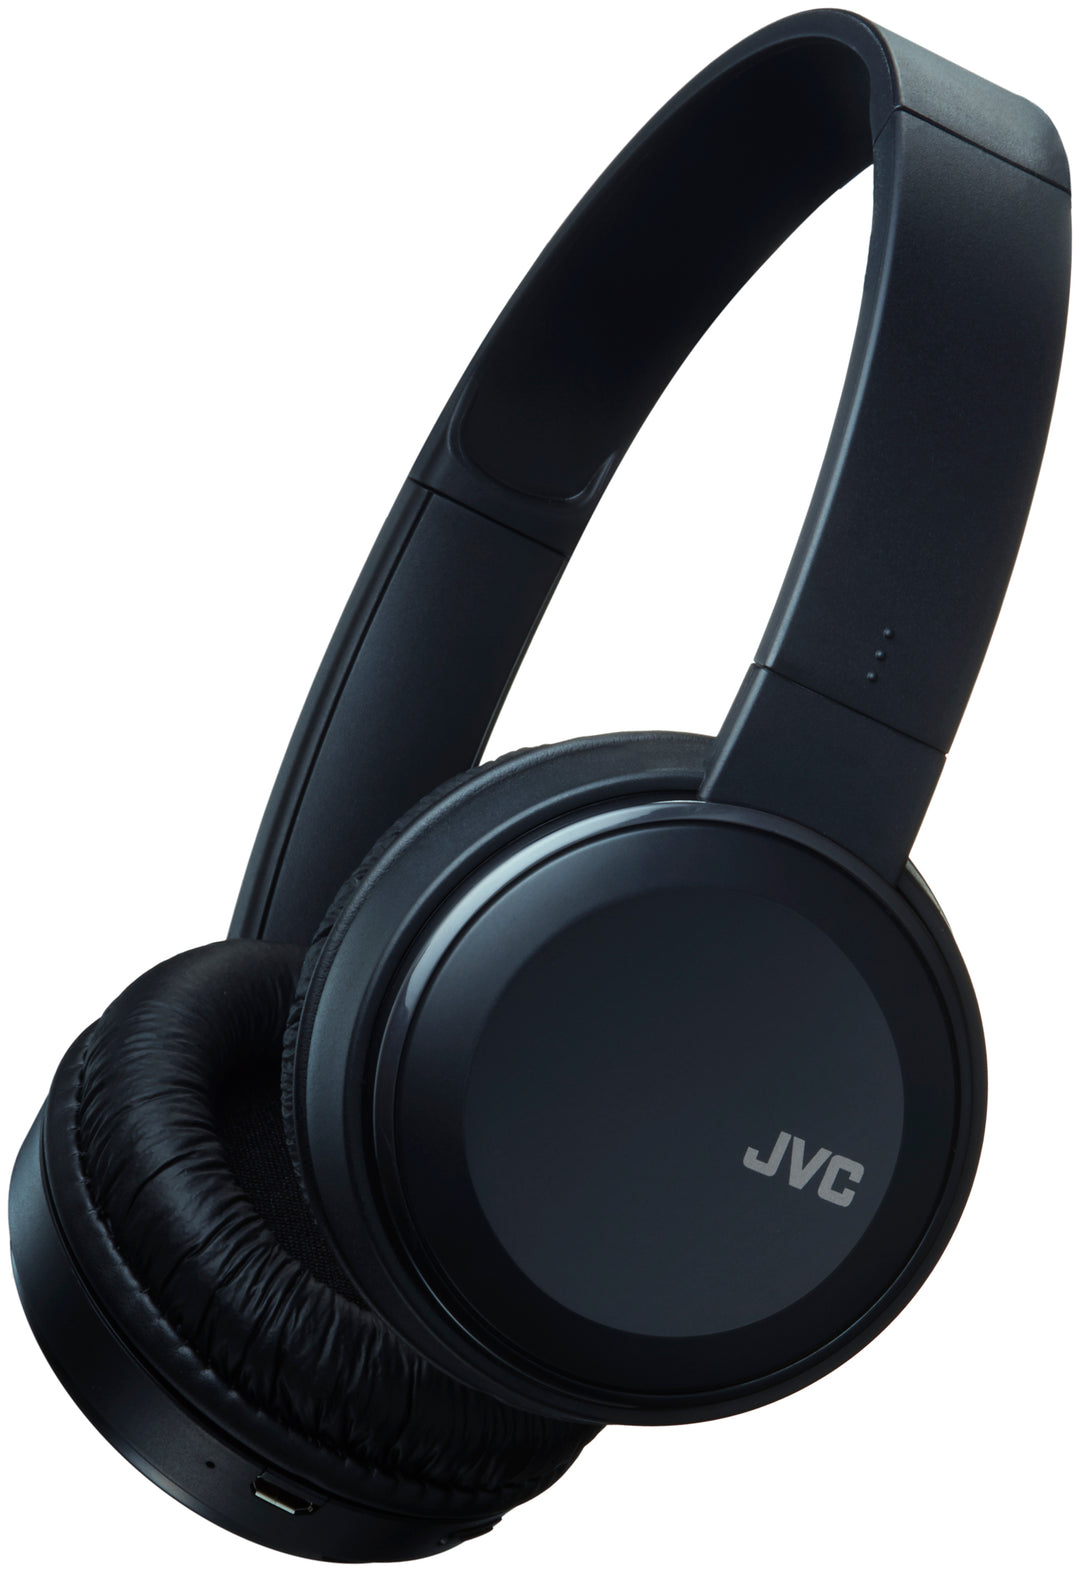 JVC HS-S190BT Wireless Headphones